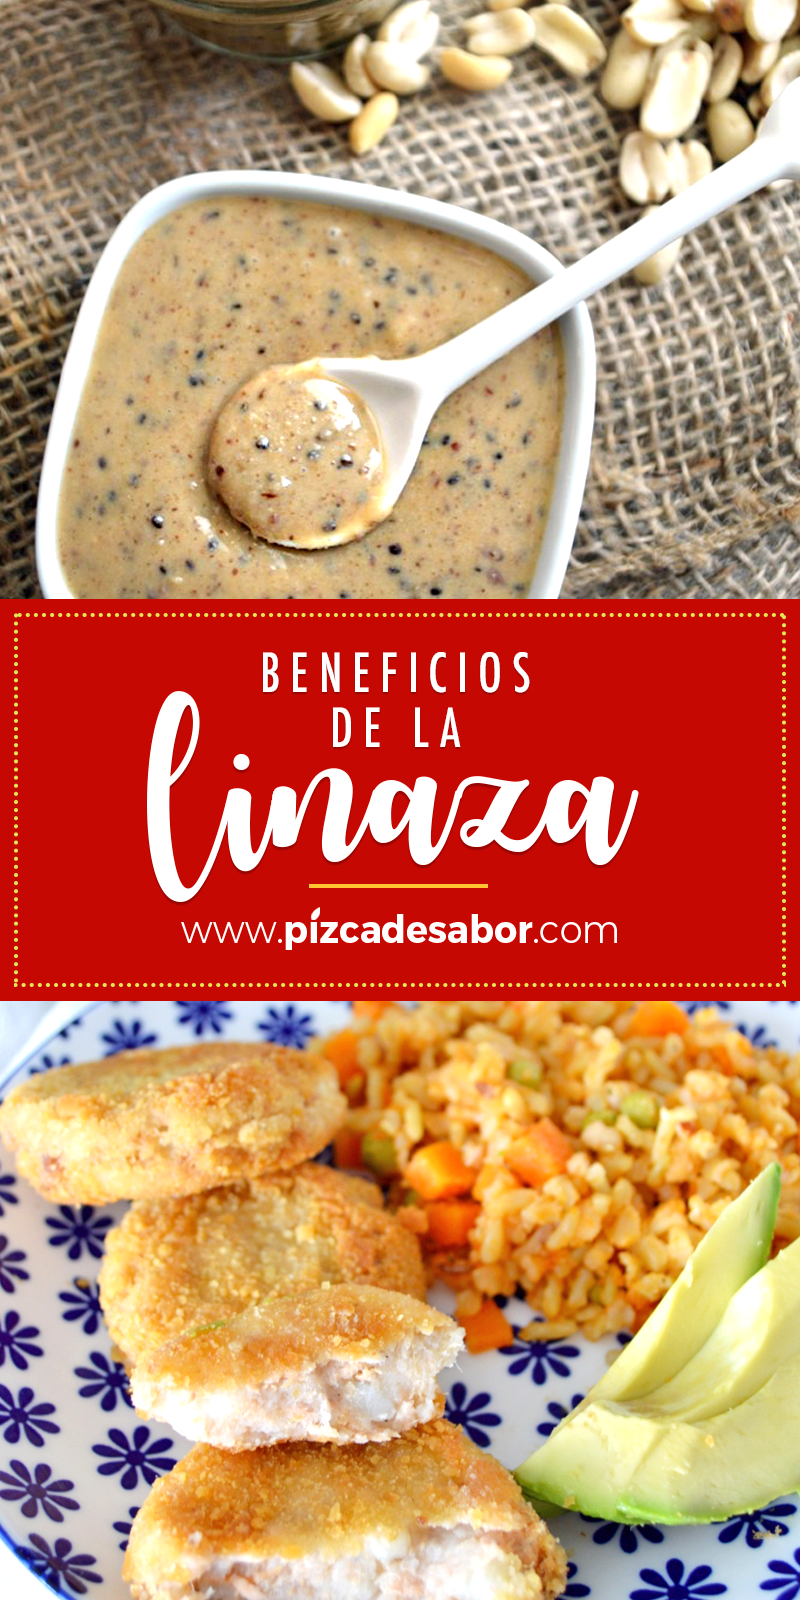 Linaza www.pizcadesabor.com